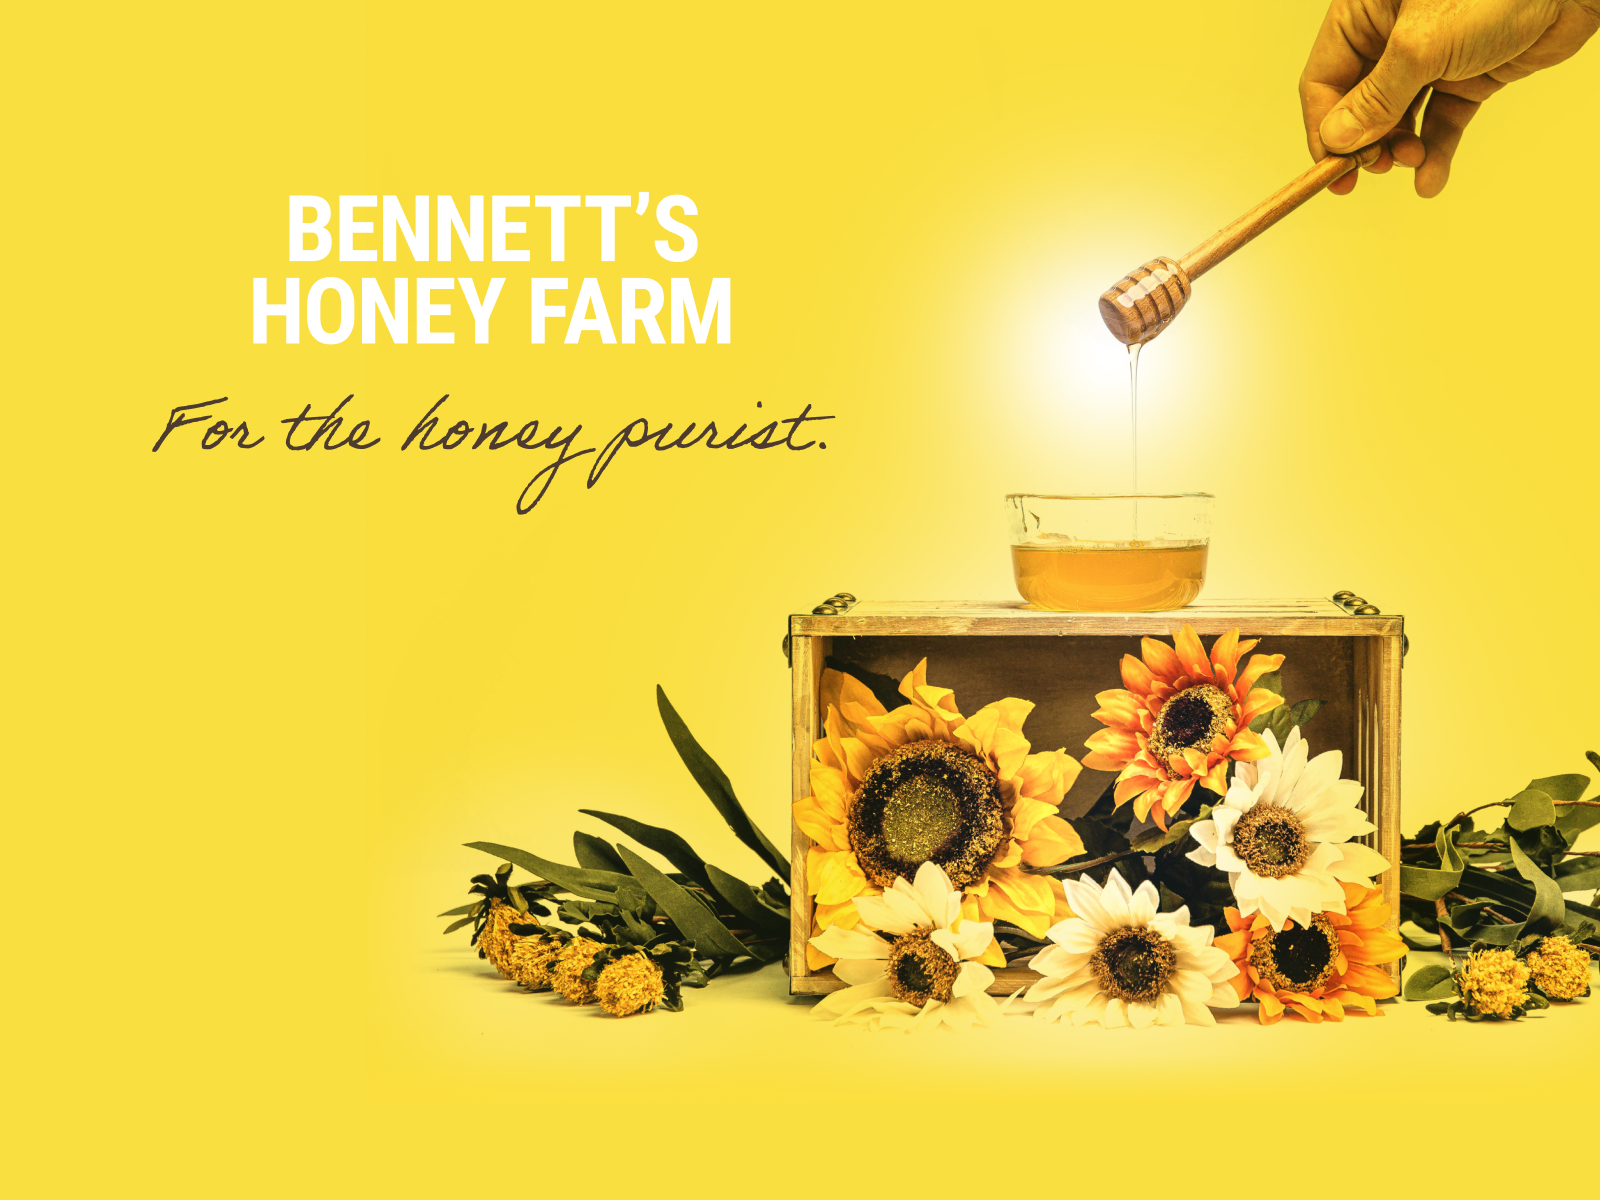 Bennett’s Honey